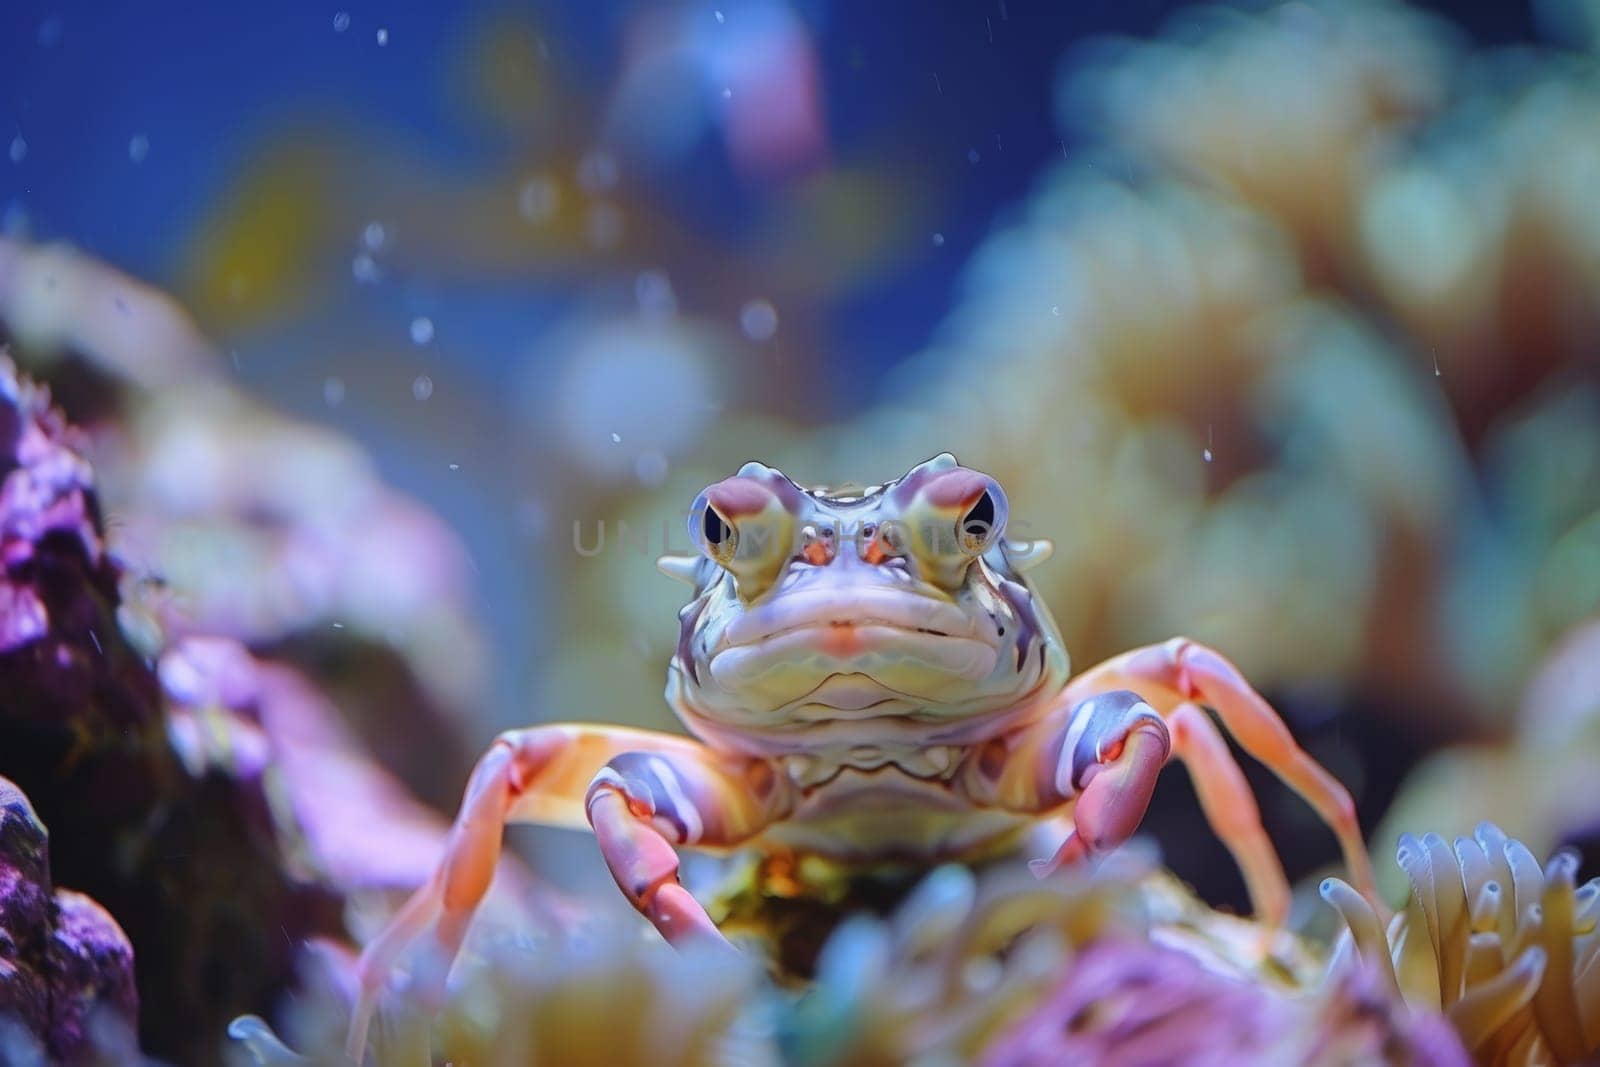 Captivating images of marine life, marine life ecosystem, Underwater image background by nijieimu